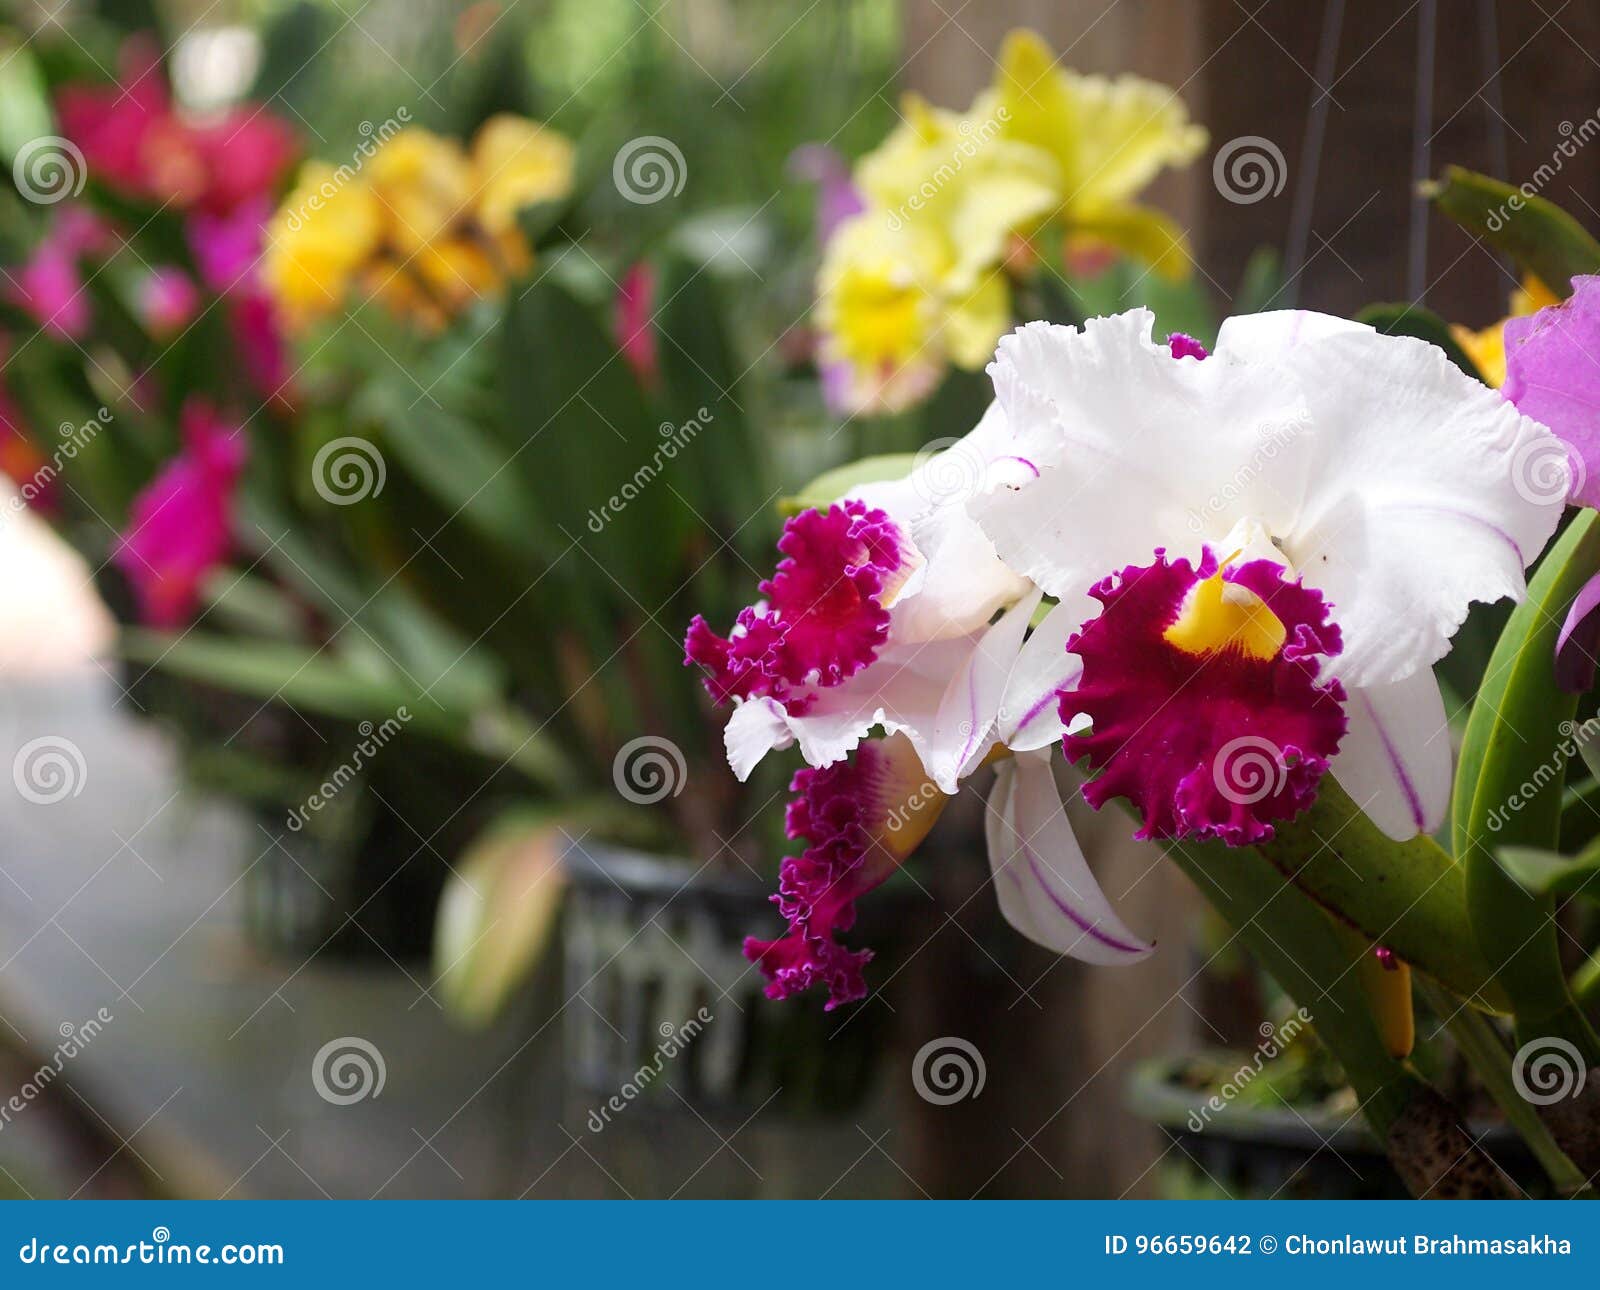 Le grand jardin jaune violet rose blanc mou coloré de couleur décorent des fleurs d'orchidées sur un pot accrochant sous le foyer sélectif extérieur d'éclairage naturel avec le fond vert romantique de tache floue